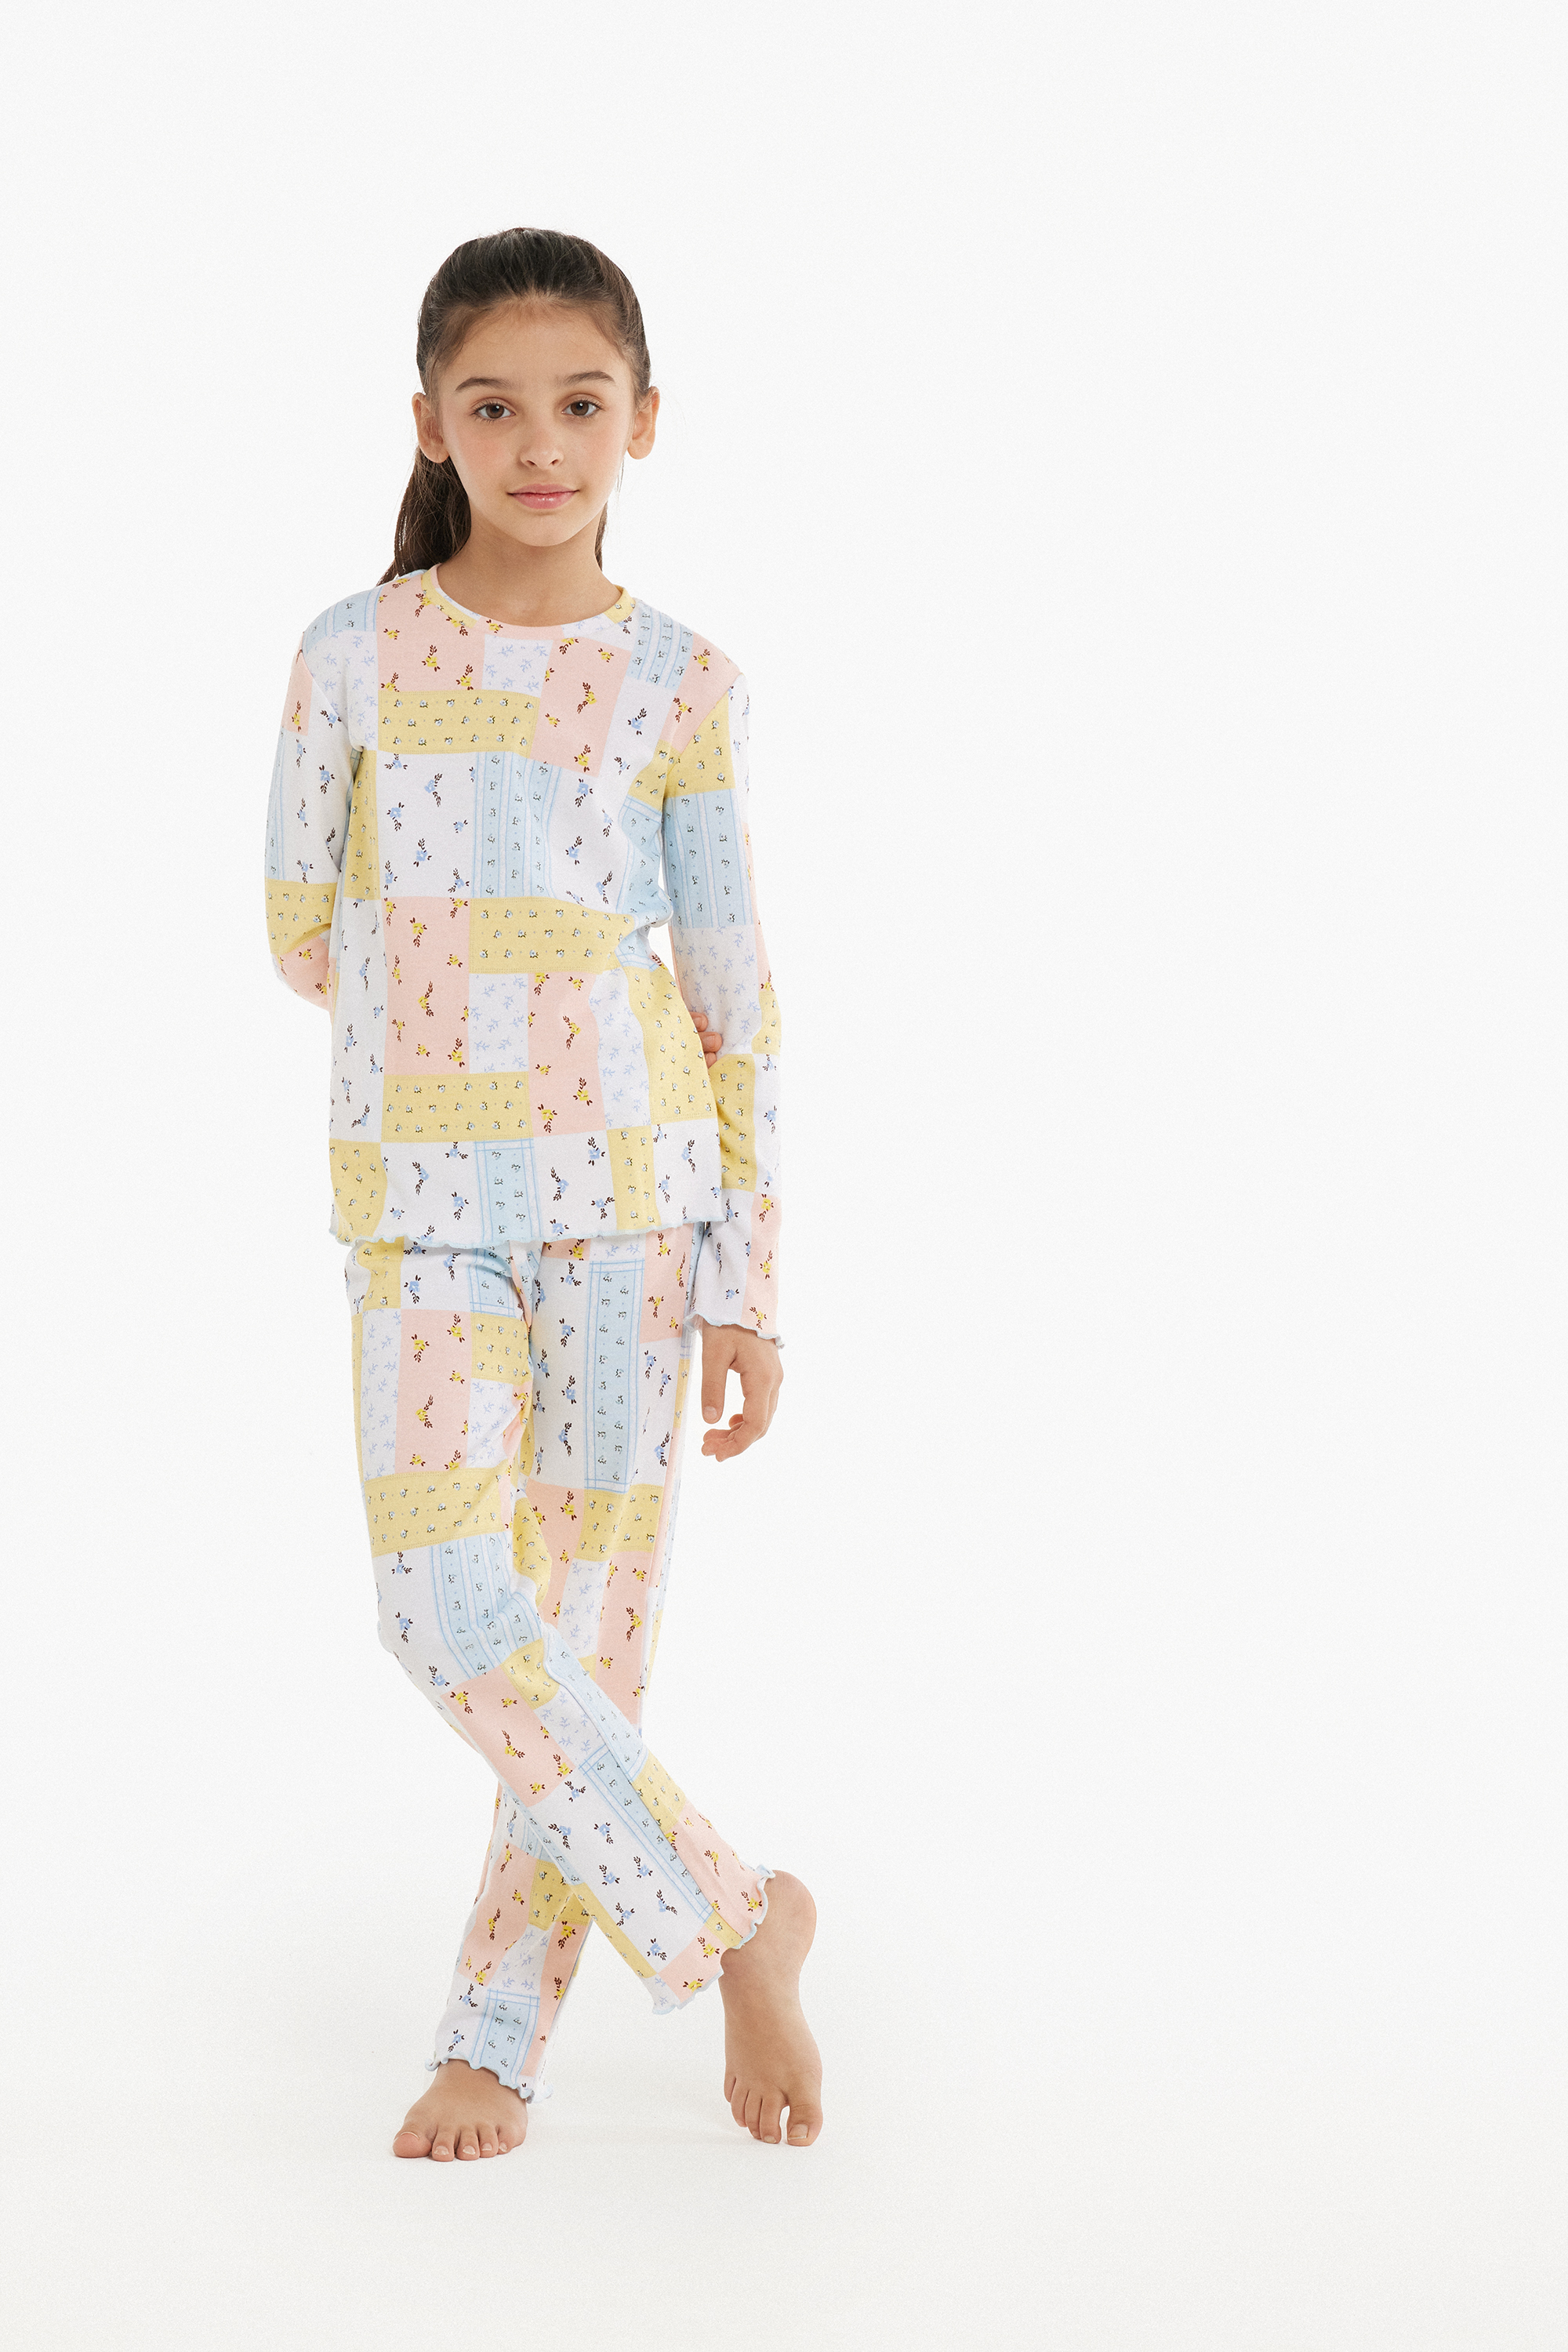 Pyjama Long Fille Coton Épais Imprimé Empiècements Fleurs